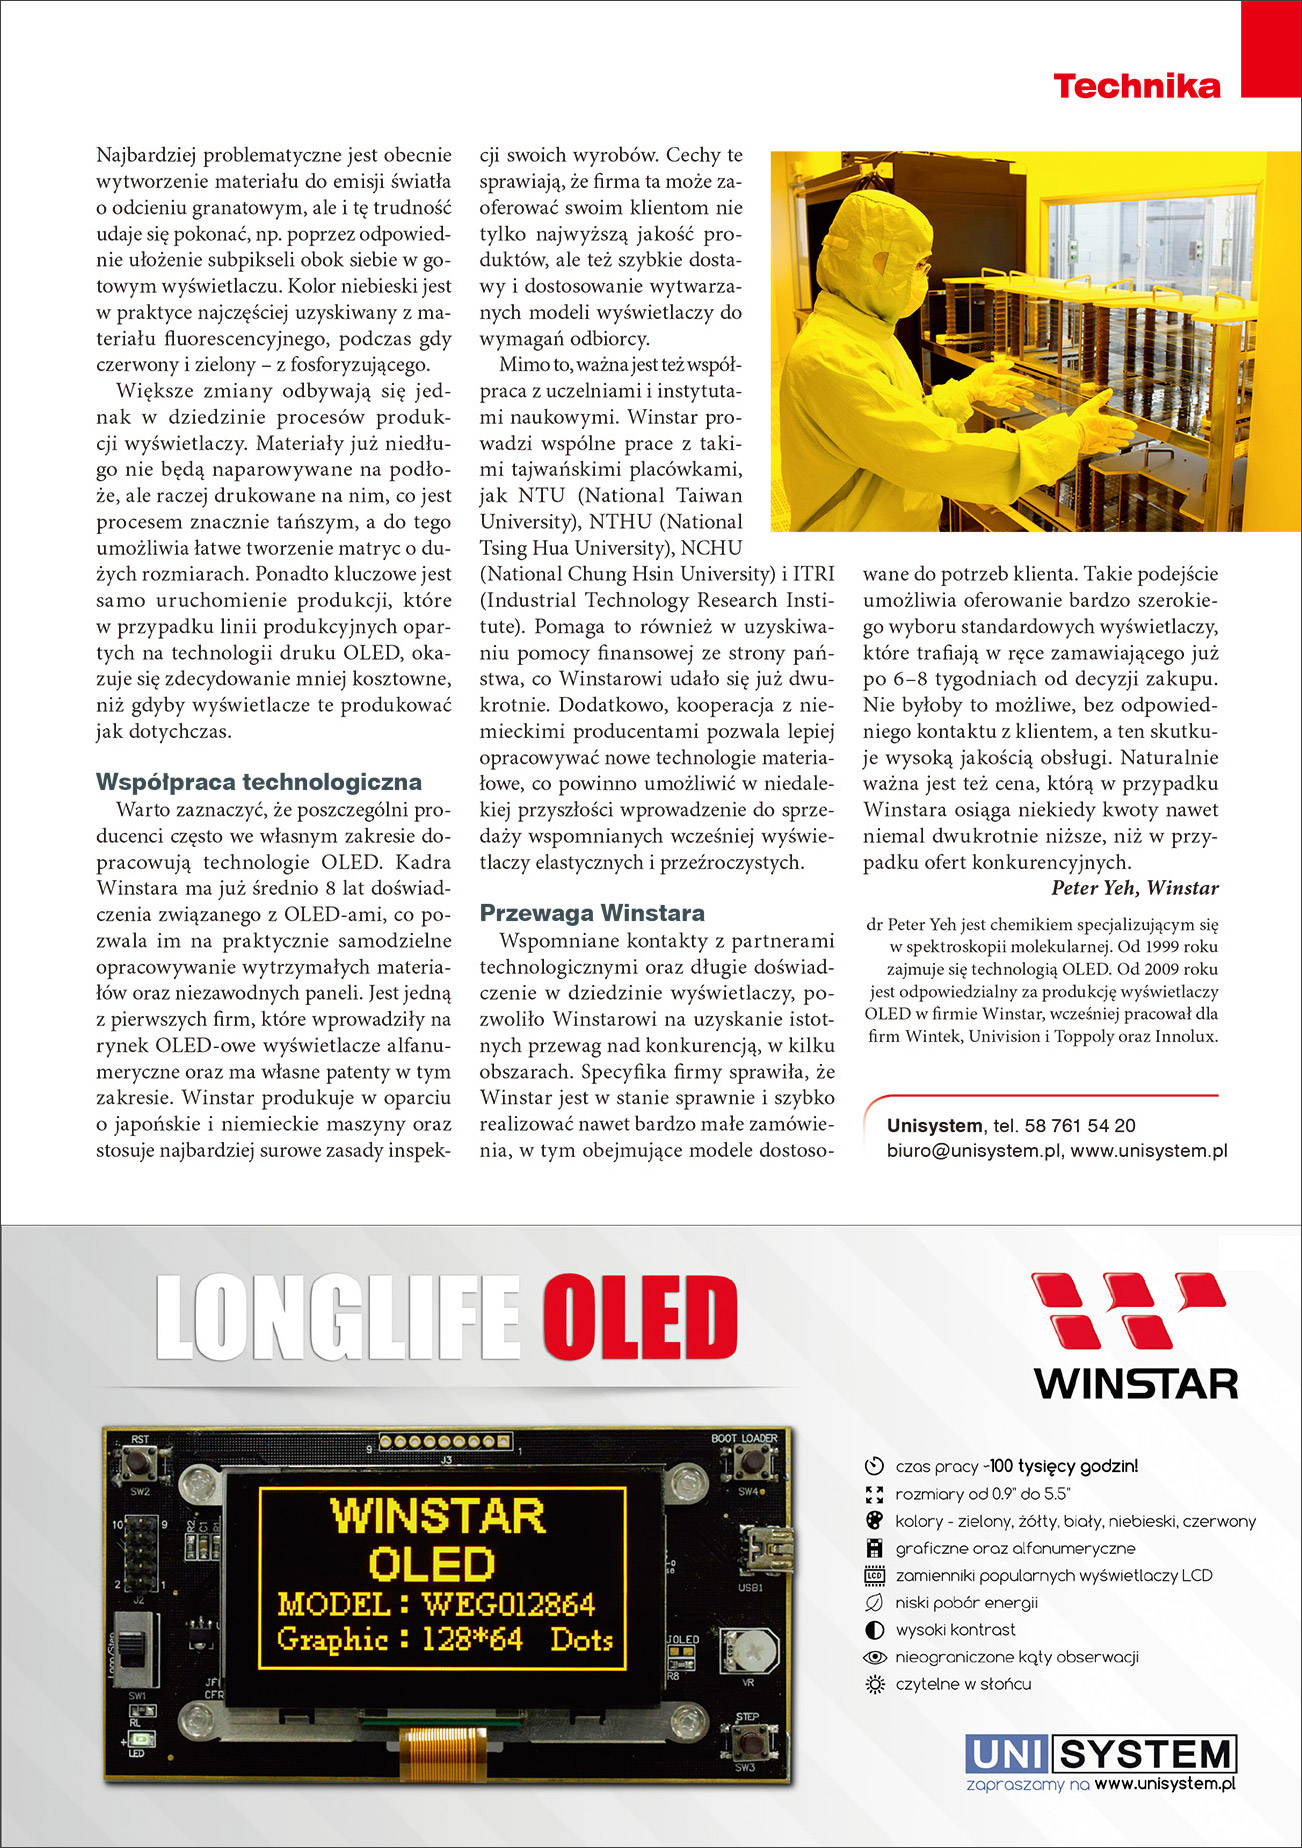 Elektronik Magazine - Publication Article (Winstar OLED) Page2